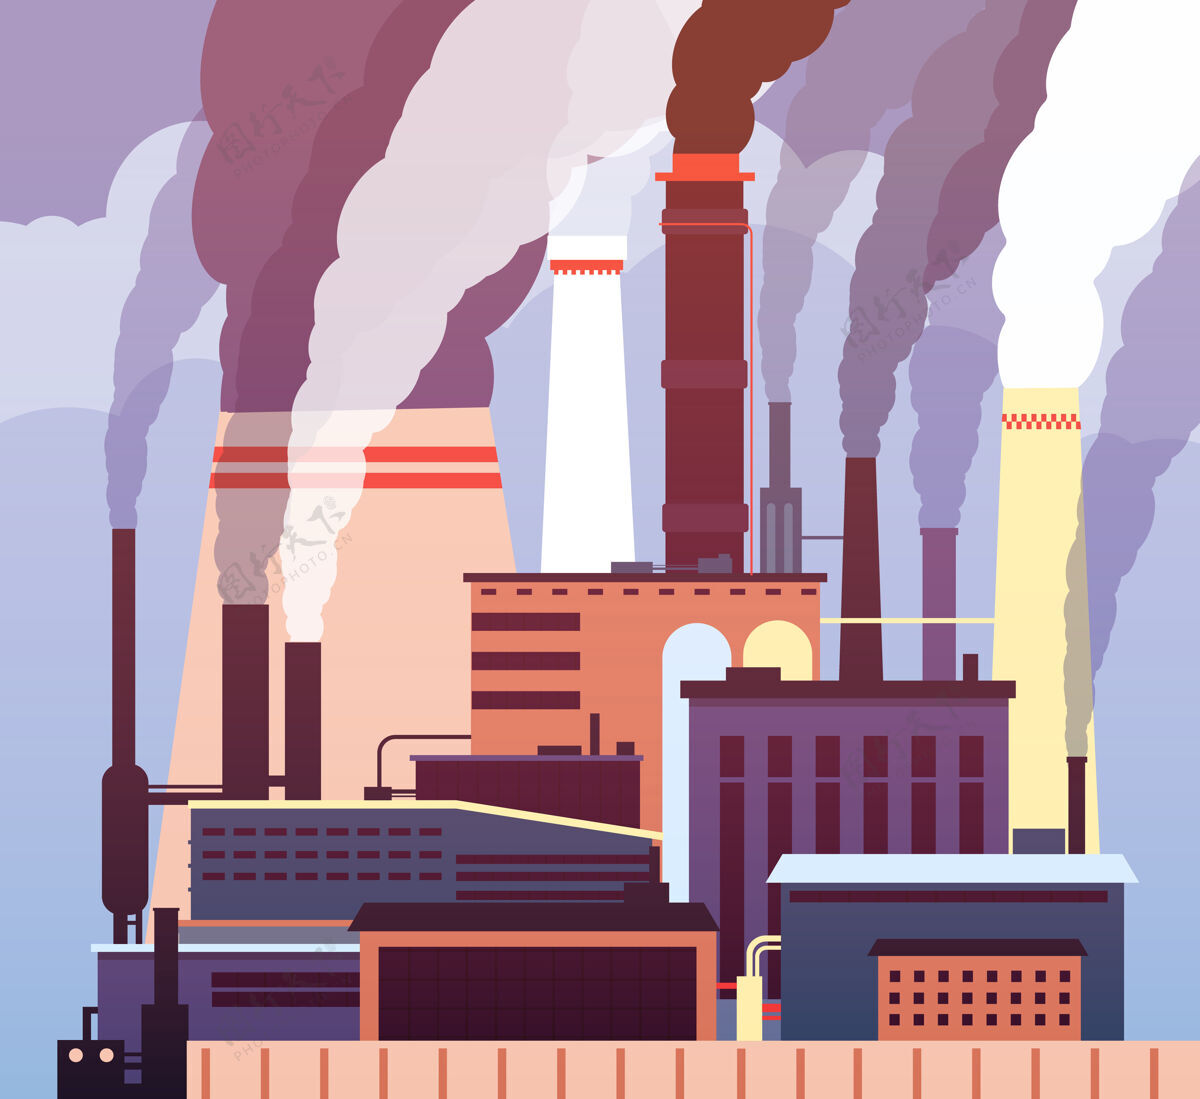 工厂工业污染环境 工业有毒烟雾 工厂吸烟管道空气污染站场危险空气